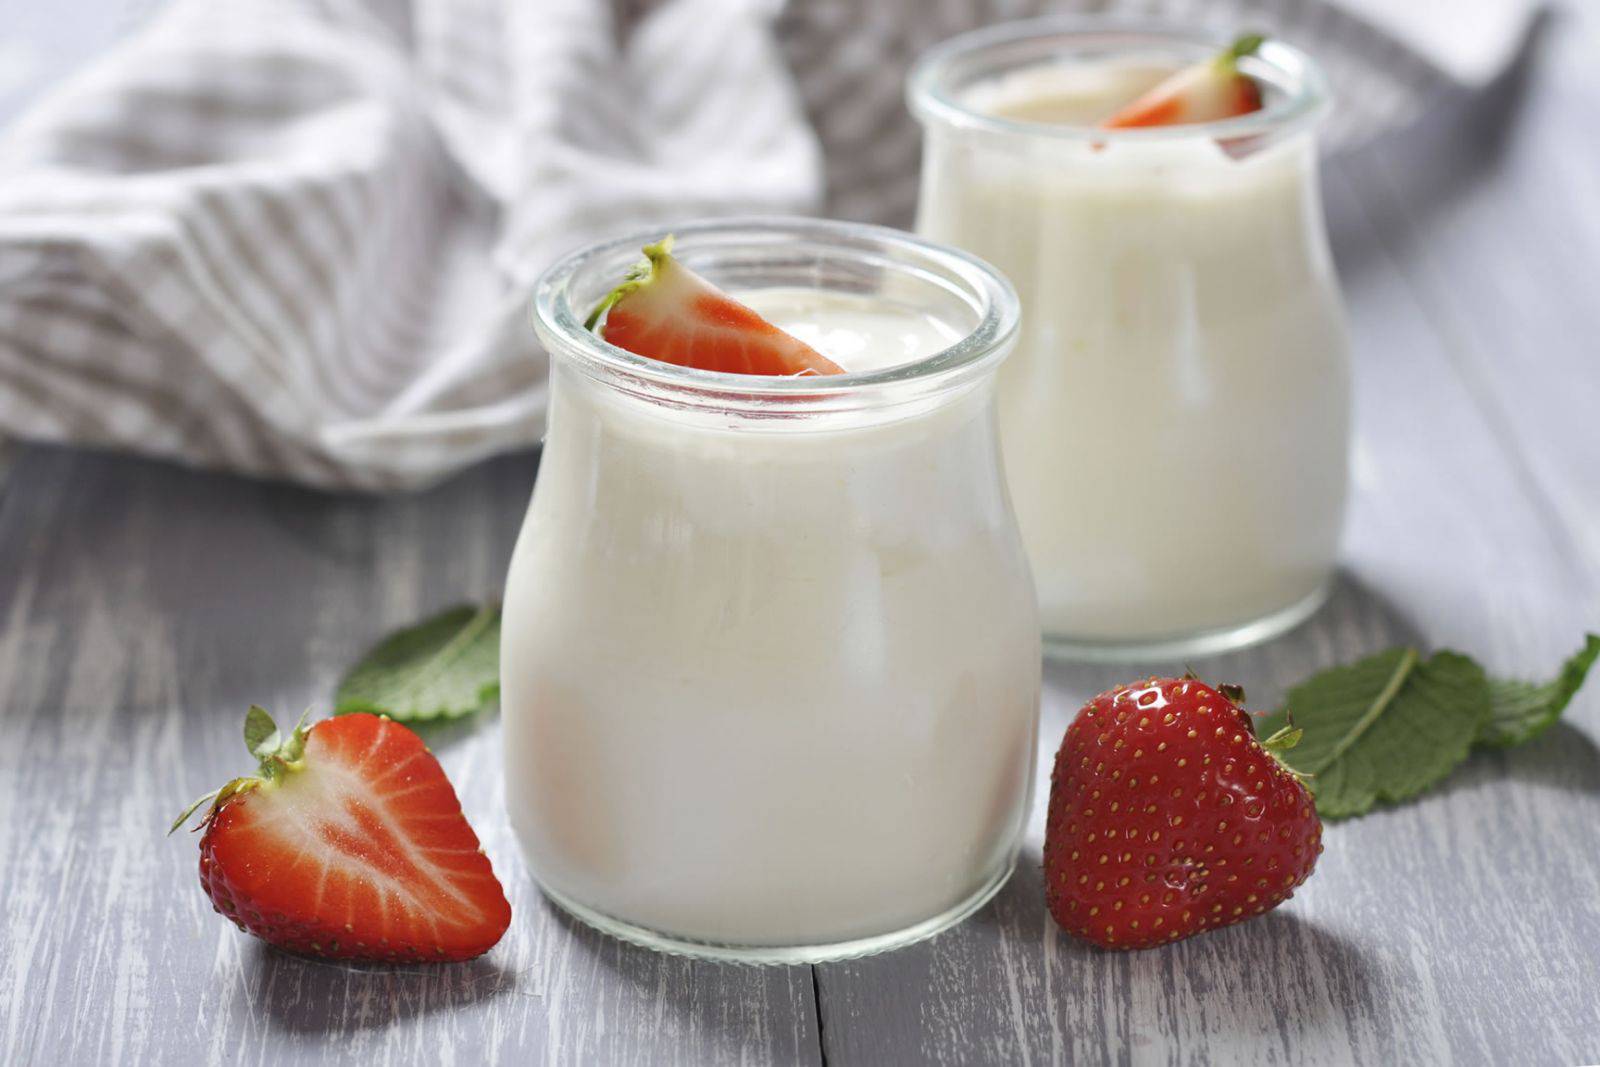 Sữa chua giúp hỗ trợ hệ tiêu hóa, kích thích tăng cân hiệu quả